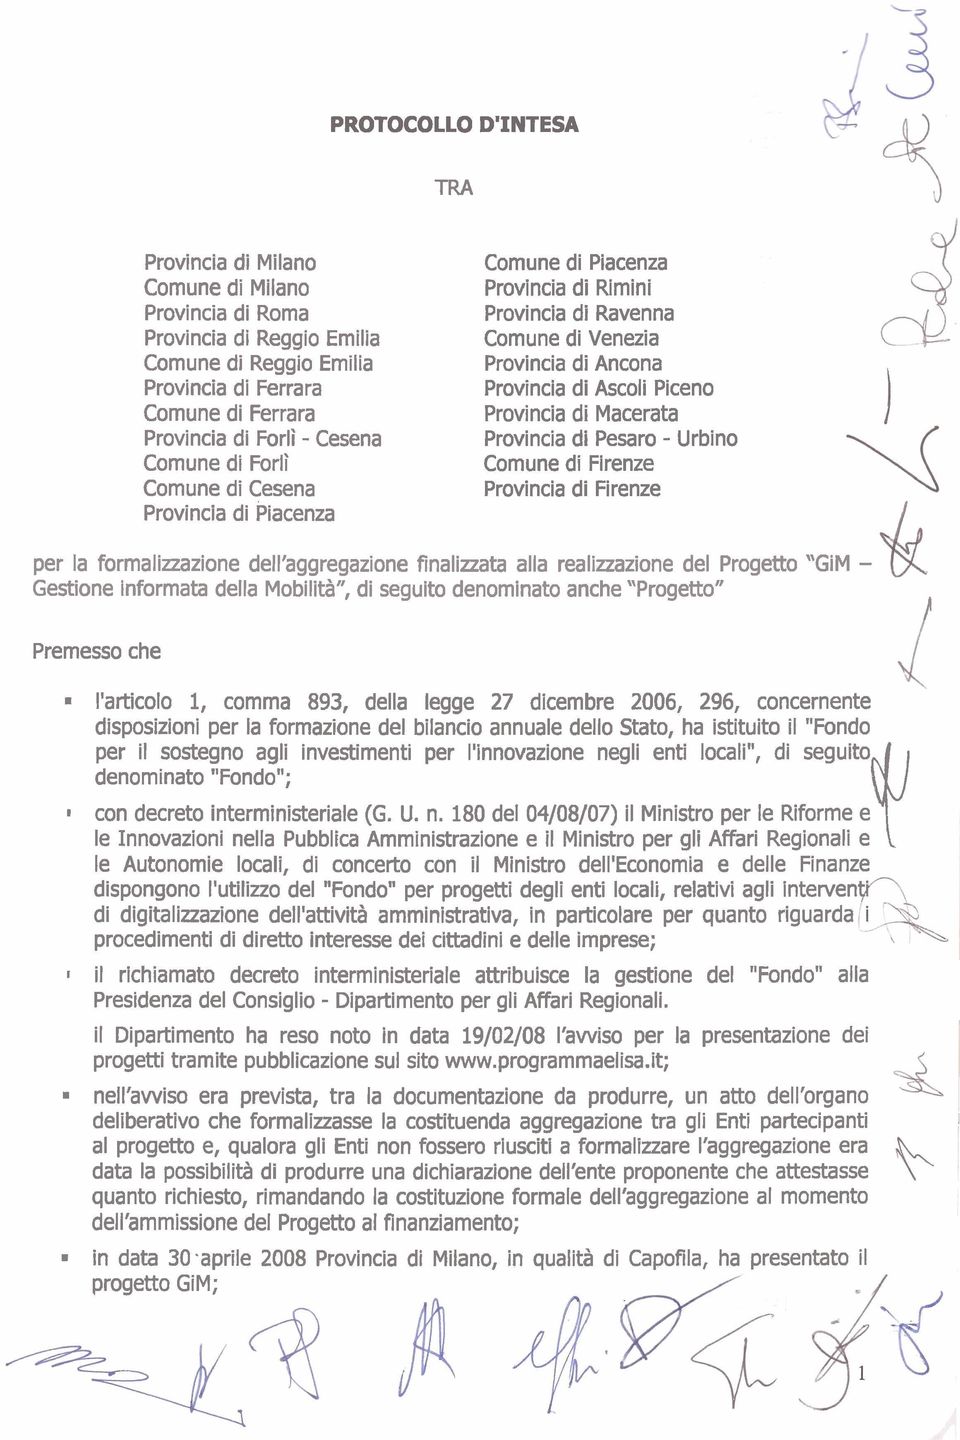 Provincia di Firenze per la formalinazione dell'aggregazione finalinata alla realizzazione del Progetto 'GiM - Gestione informata della Mobilità", di seguito denominato anche "Progetto" Premesso che